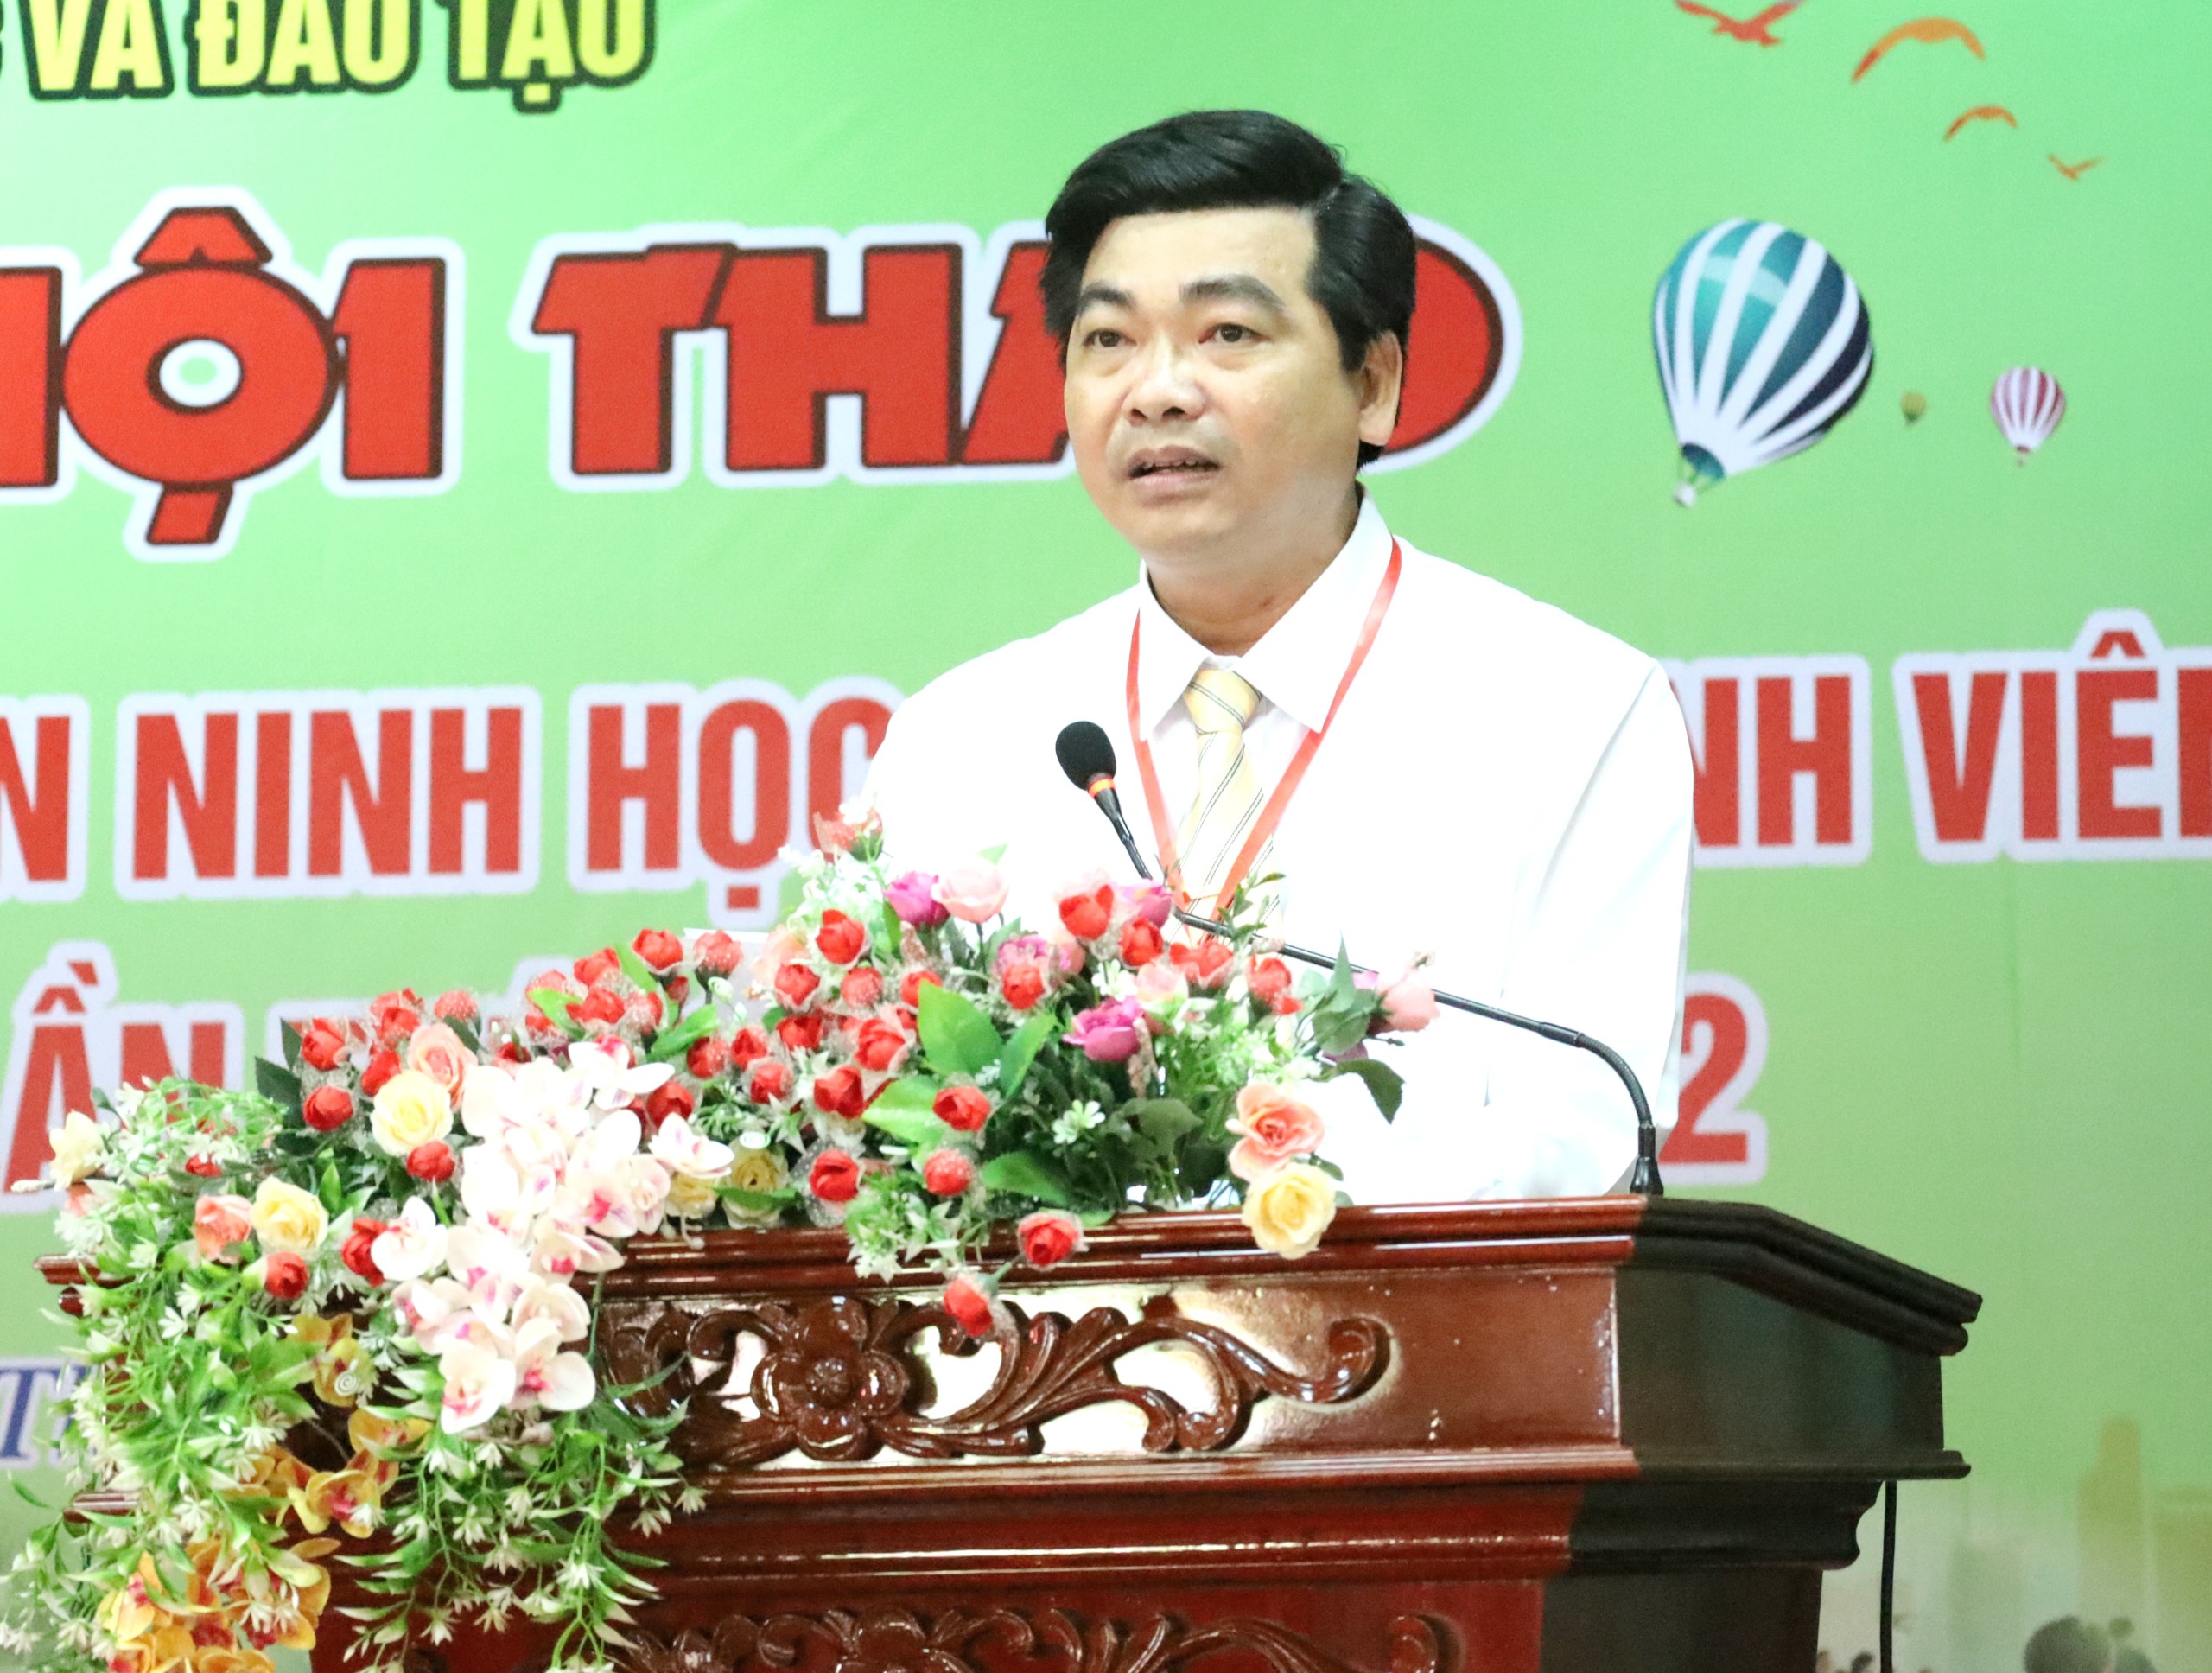 Ông Trần Thanh Bình - Giám đốc Sở Giáo dục và Đào tạo TP. Cần Thơ, Trưởng ban tổ chức hội thao phát biểu bế mạc.